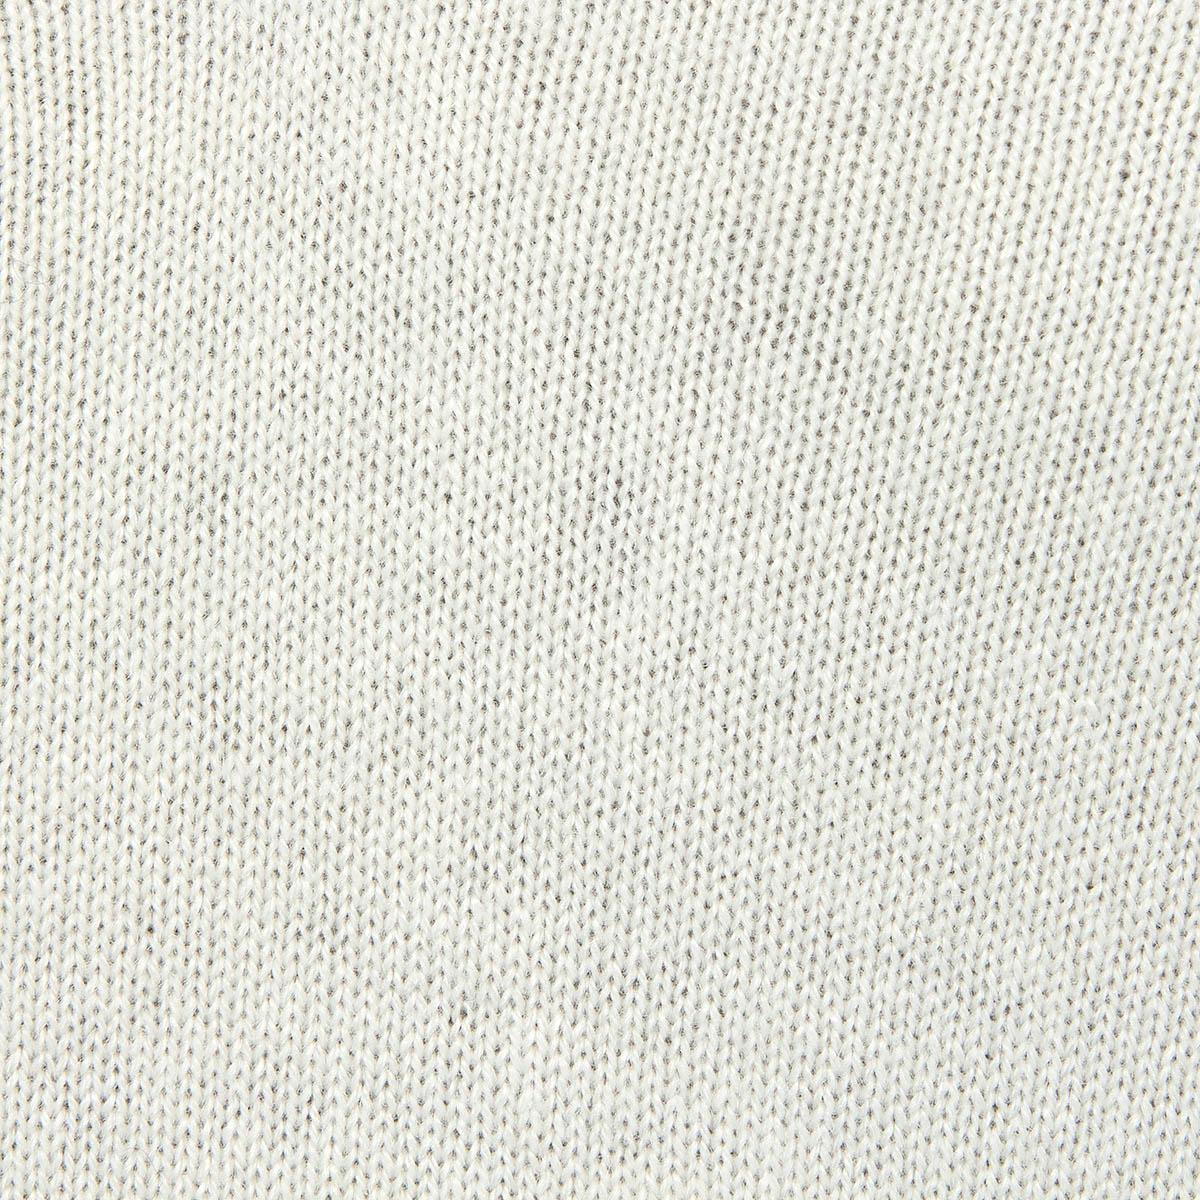 BRUNELLO CUCINELLI white cashmere STRIPED V-NECK Sweater L In Excellent Condition For Sale In Zürich, CH